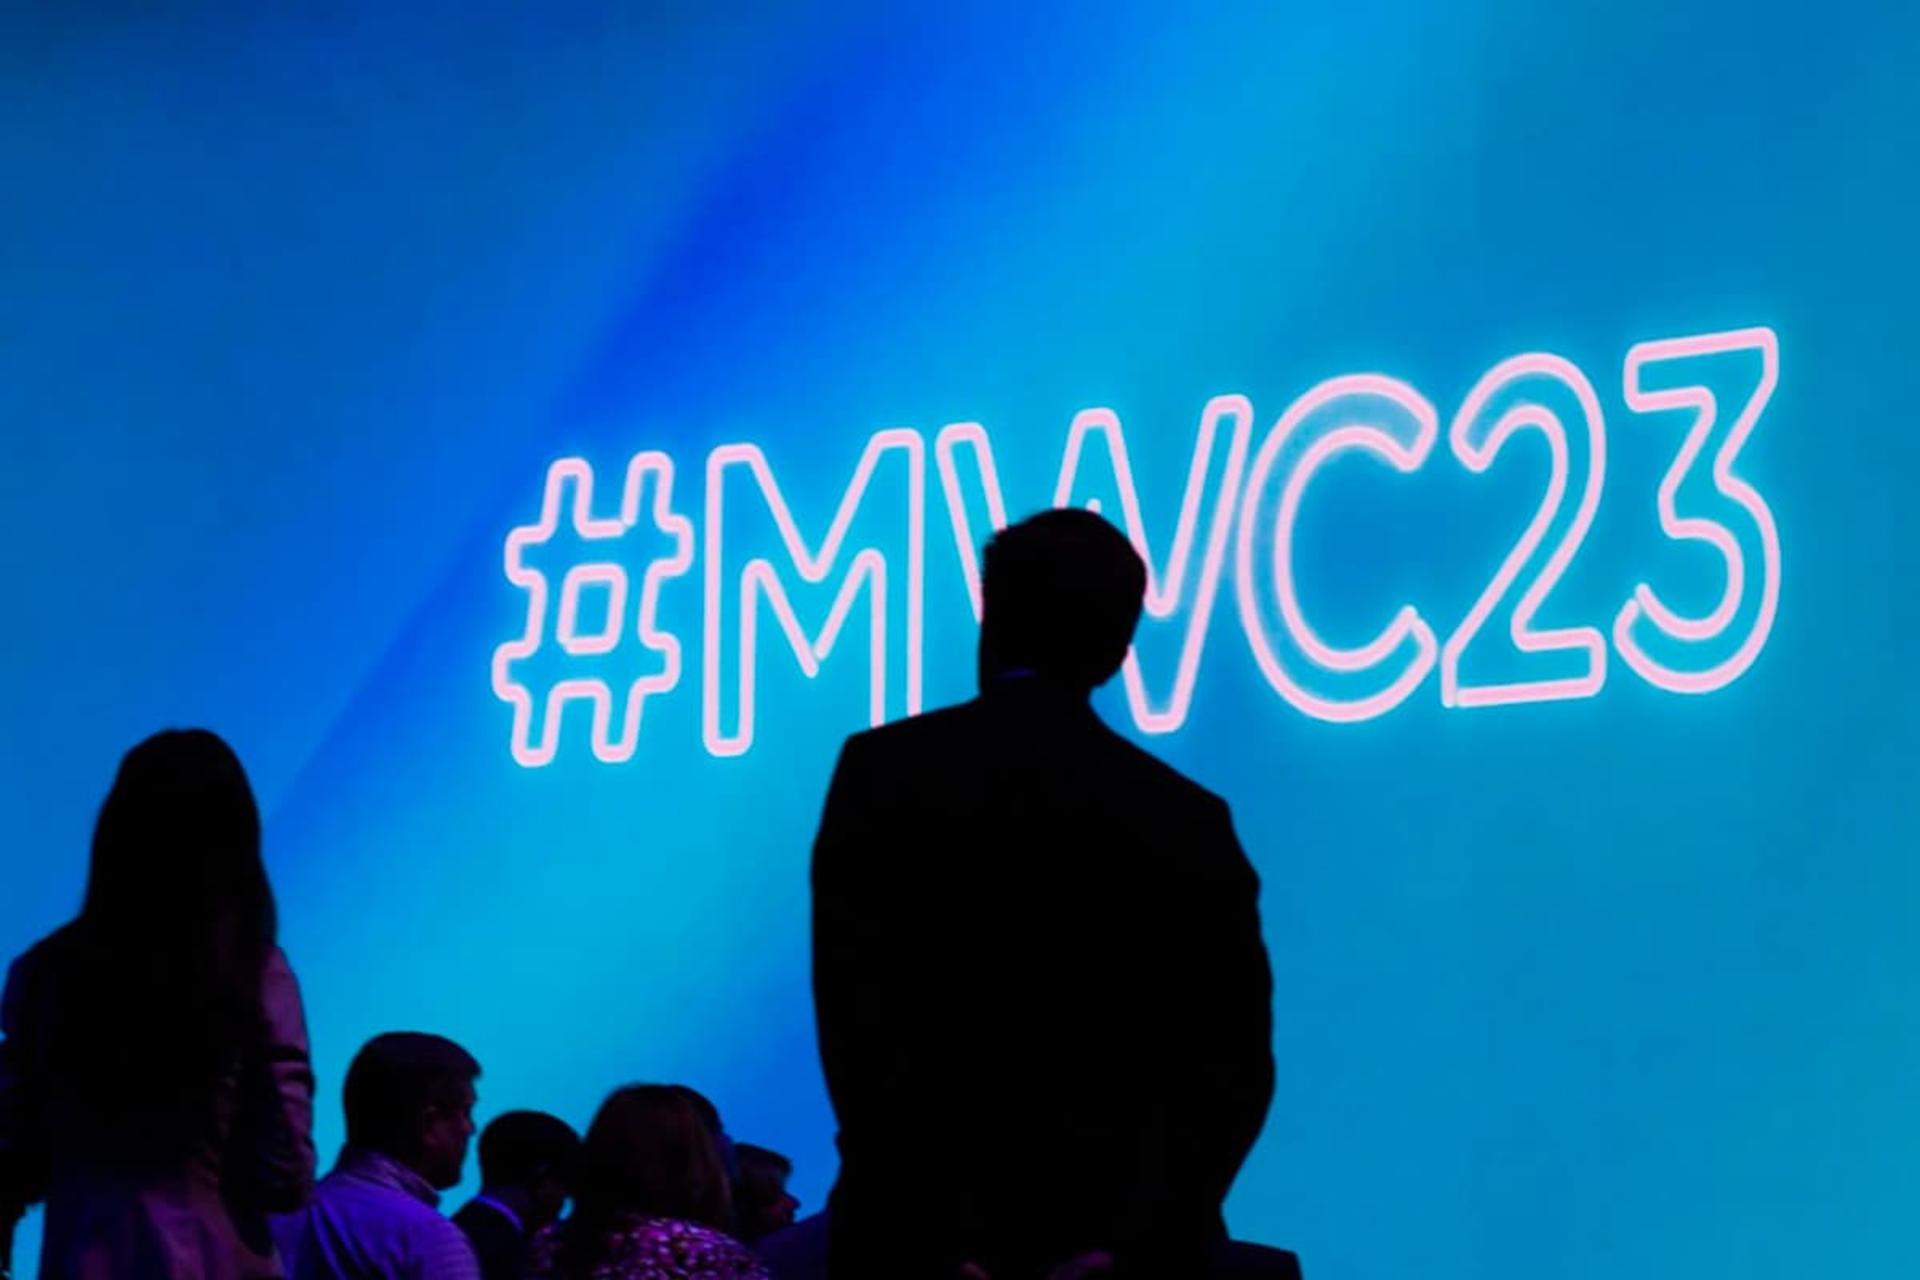 سایه مرد در برابر لوگو MWC 2023 کنگره جهانی موبایل